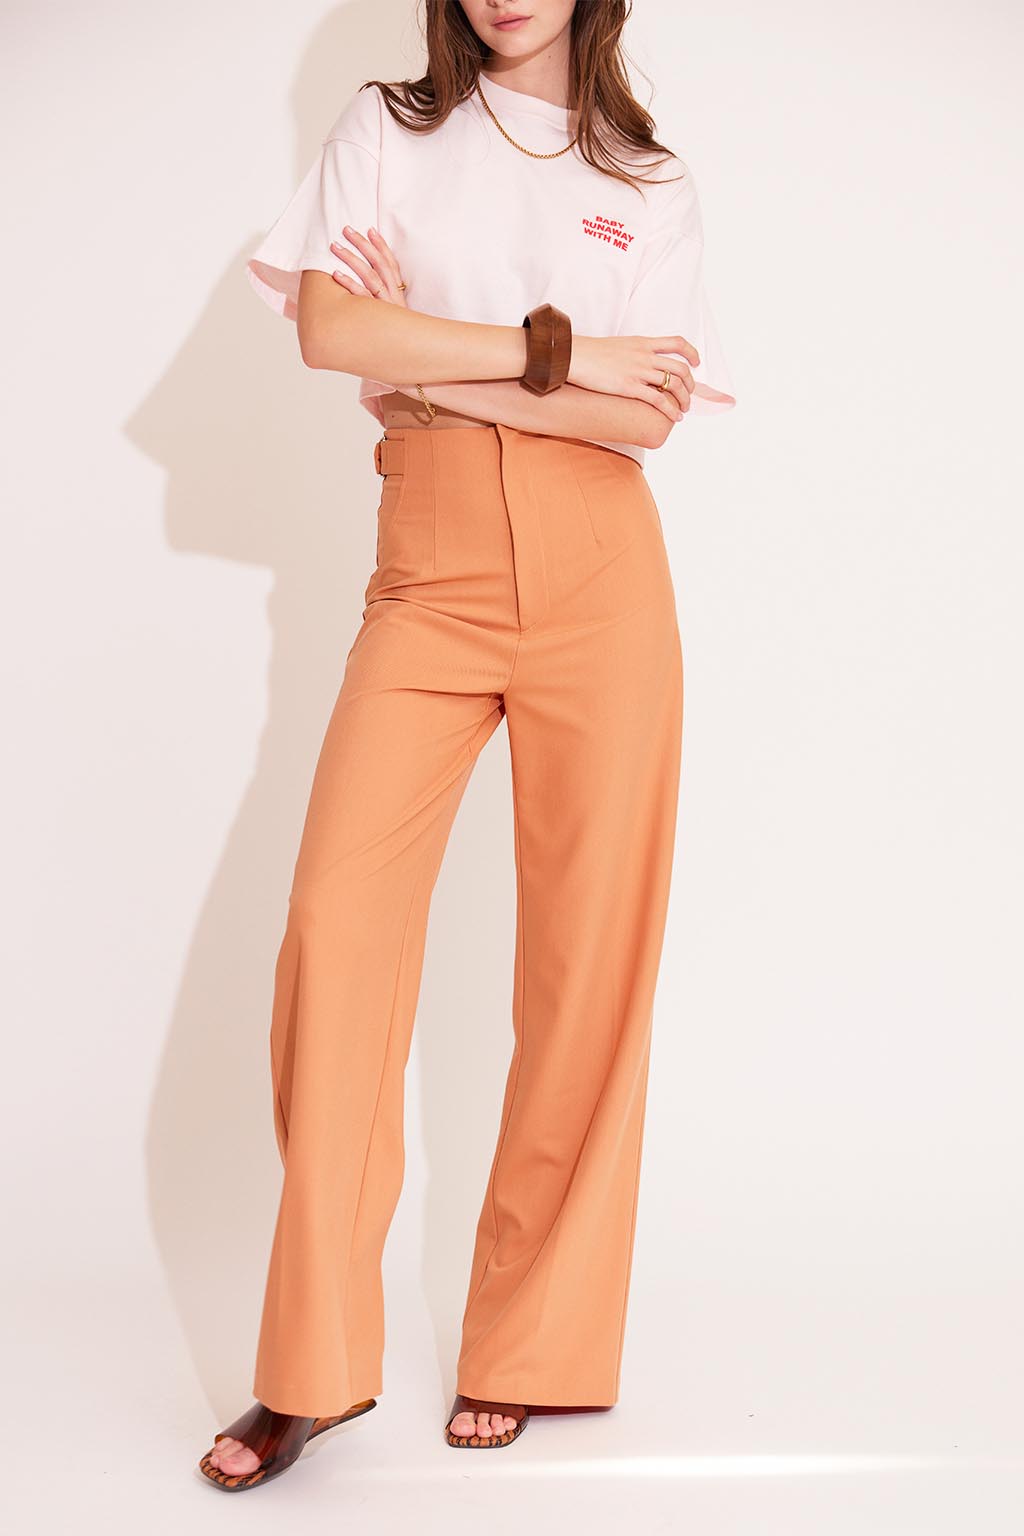 Waist Belted Color Pants Orange 3